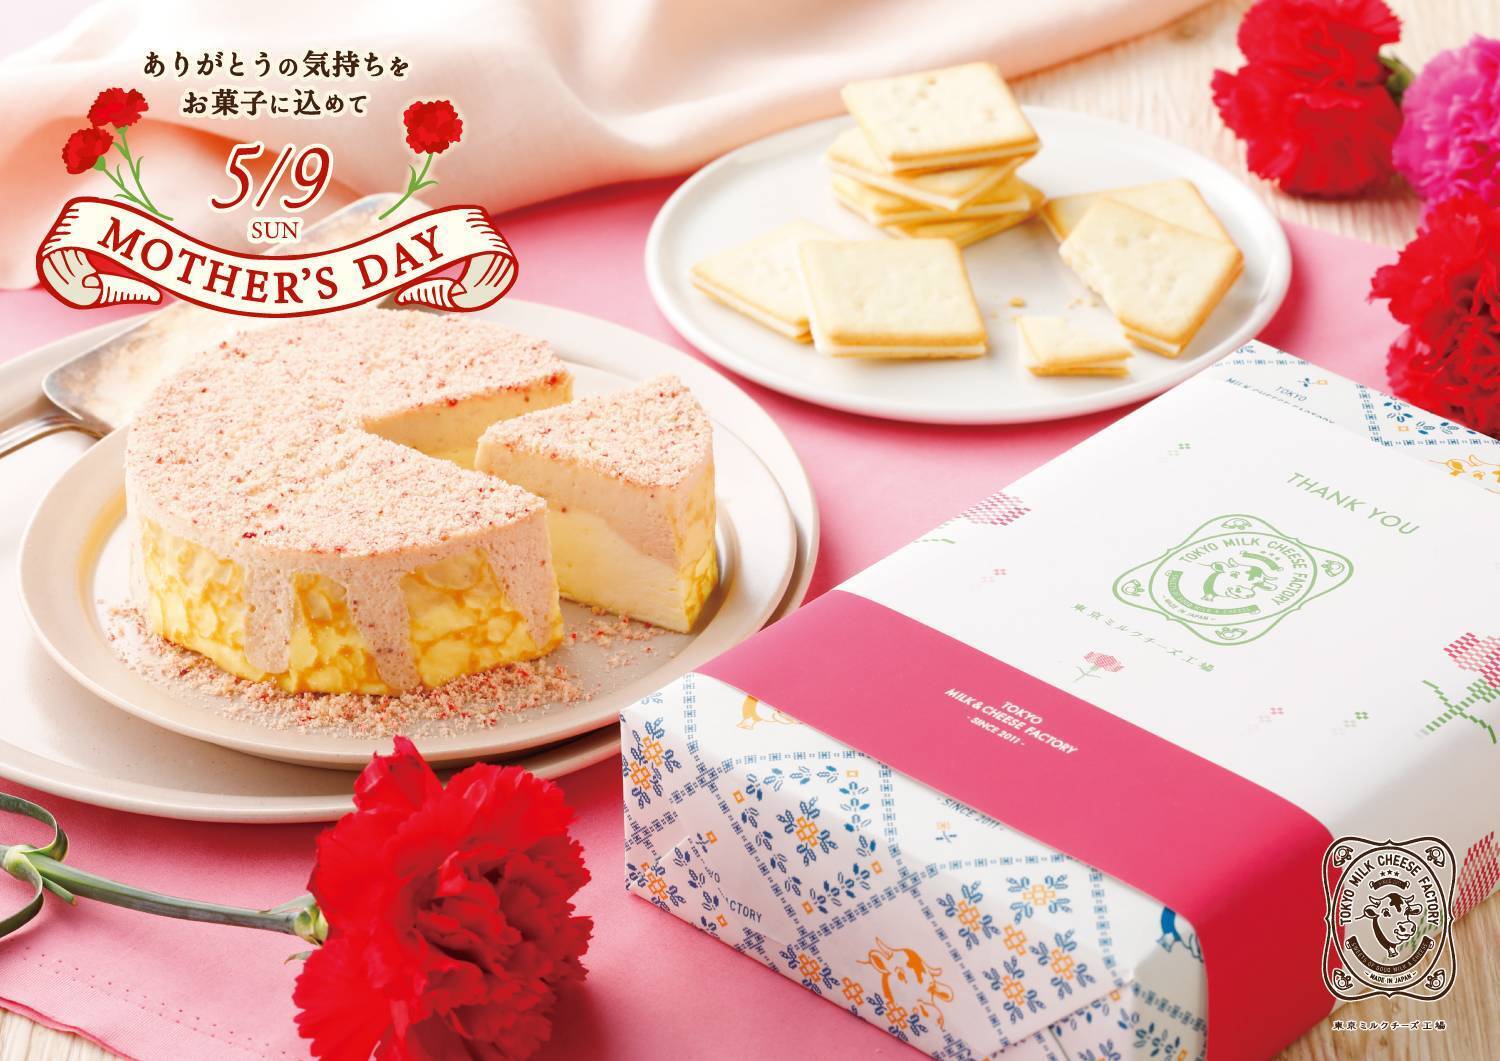 東京ミルクチーズ工場で 母の日サービス を開催中 おすすめのスイーツを贈り物に 21年4月14日 エキサイトニュース